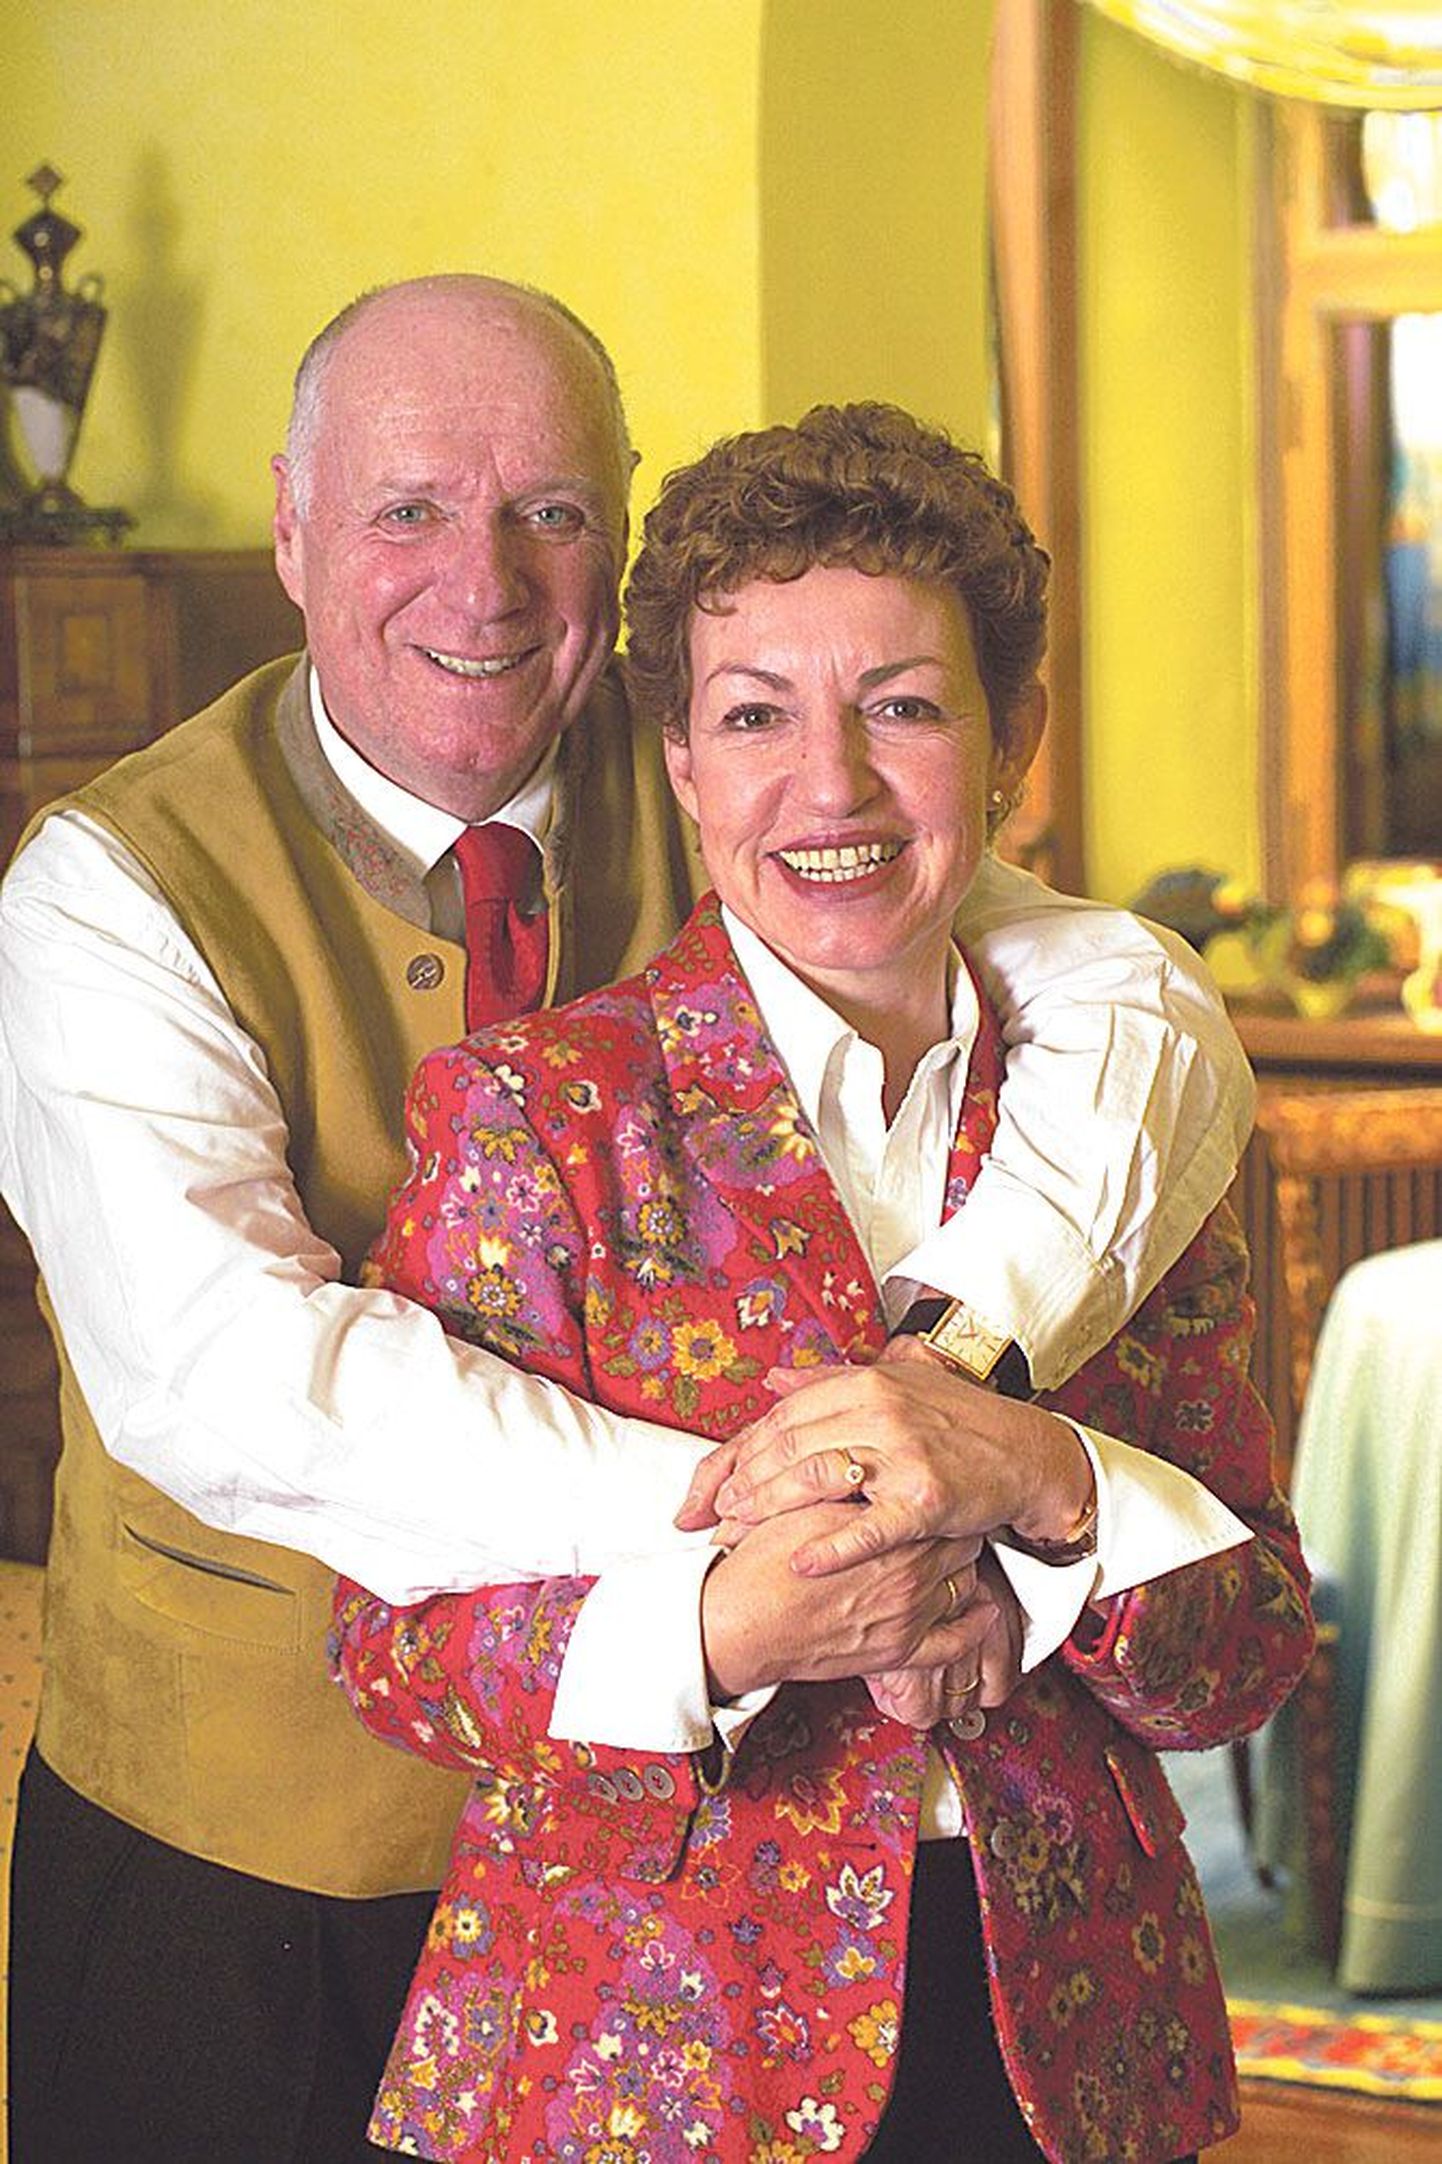 Аннегрет и ее муж Герхард вместе уже более 25 лет. Знаменитый винодел и один из лучших шеф-поваров Германии – отличная пара!